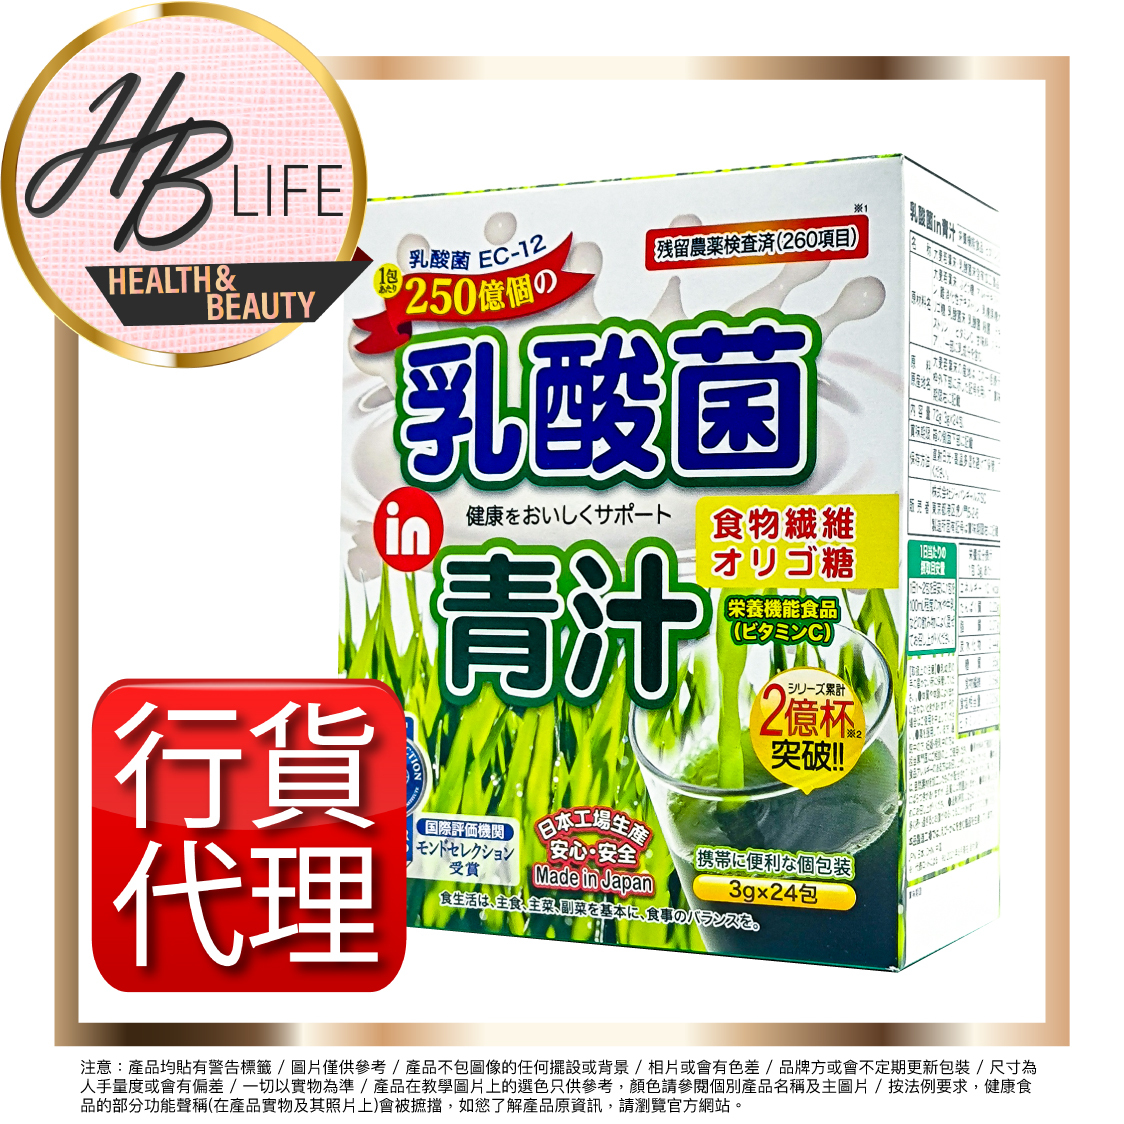 乳酸菌青汁24包 (香港代理 2051)新舊版本隨機發送 此日期前最佳2025年8月31日